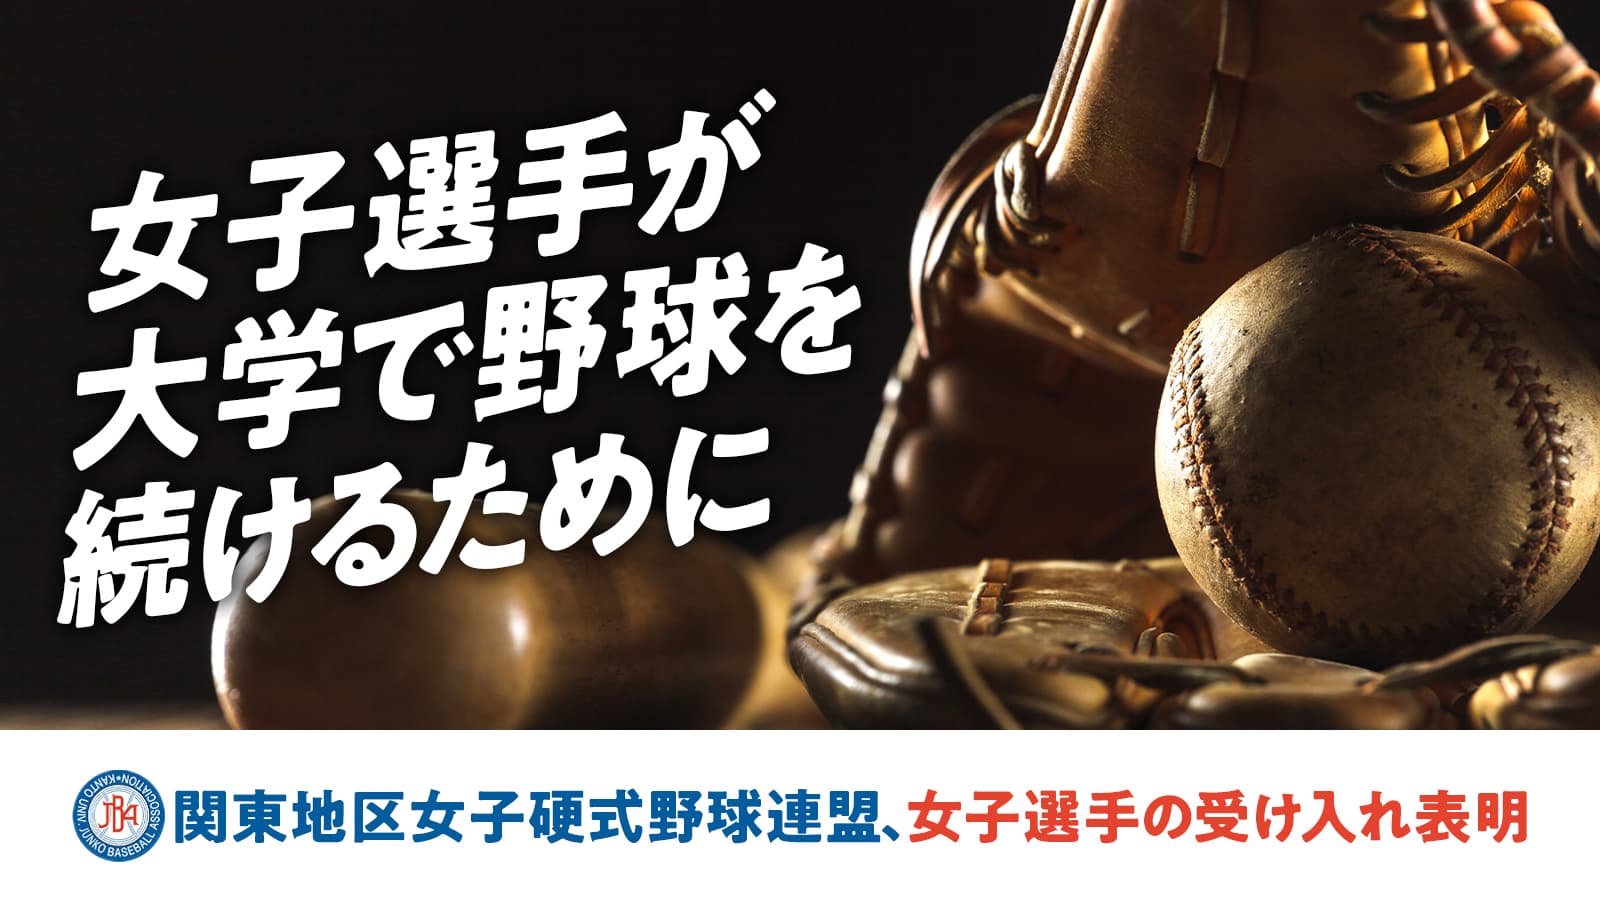 関東地区大学準硬式野球連盟が女子選手の積極的な受け入れを表明